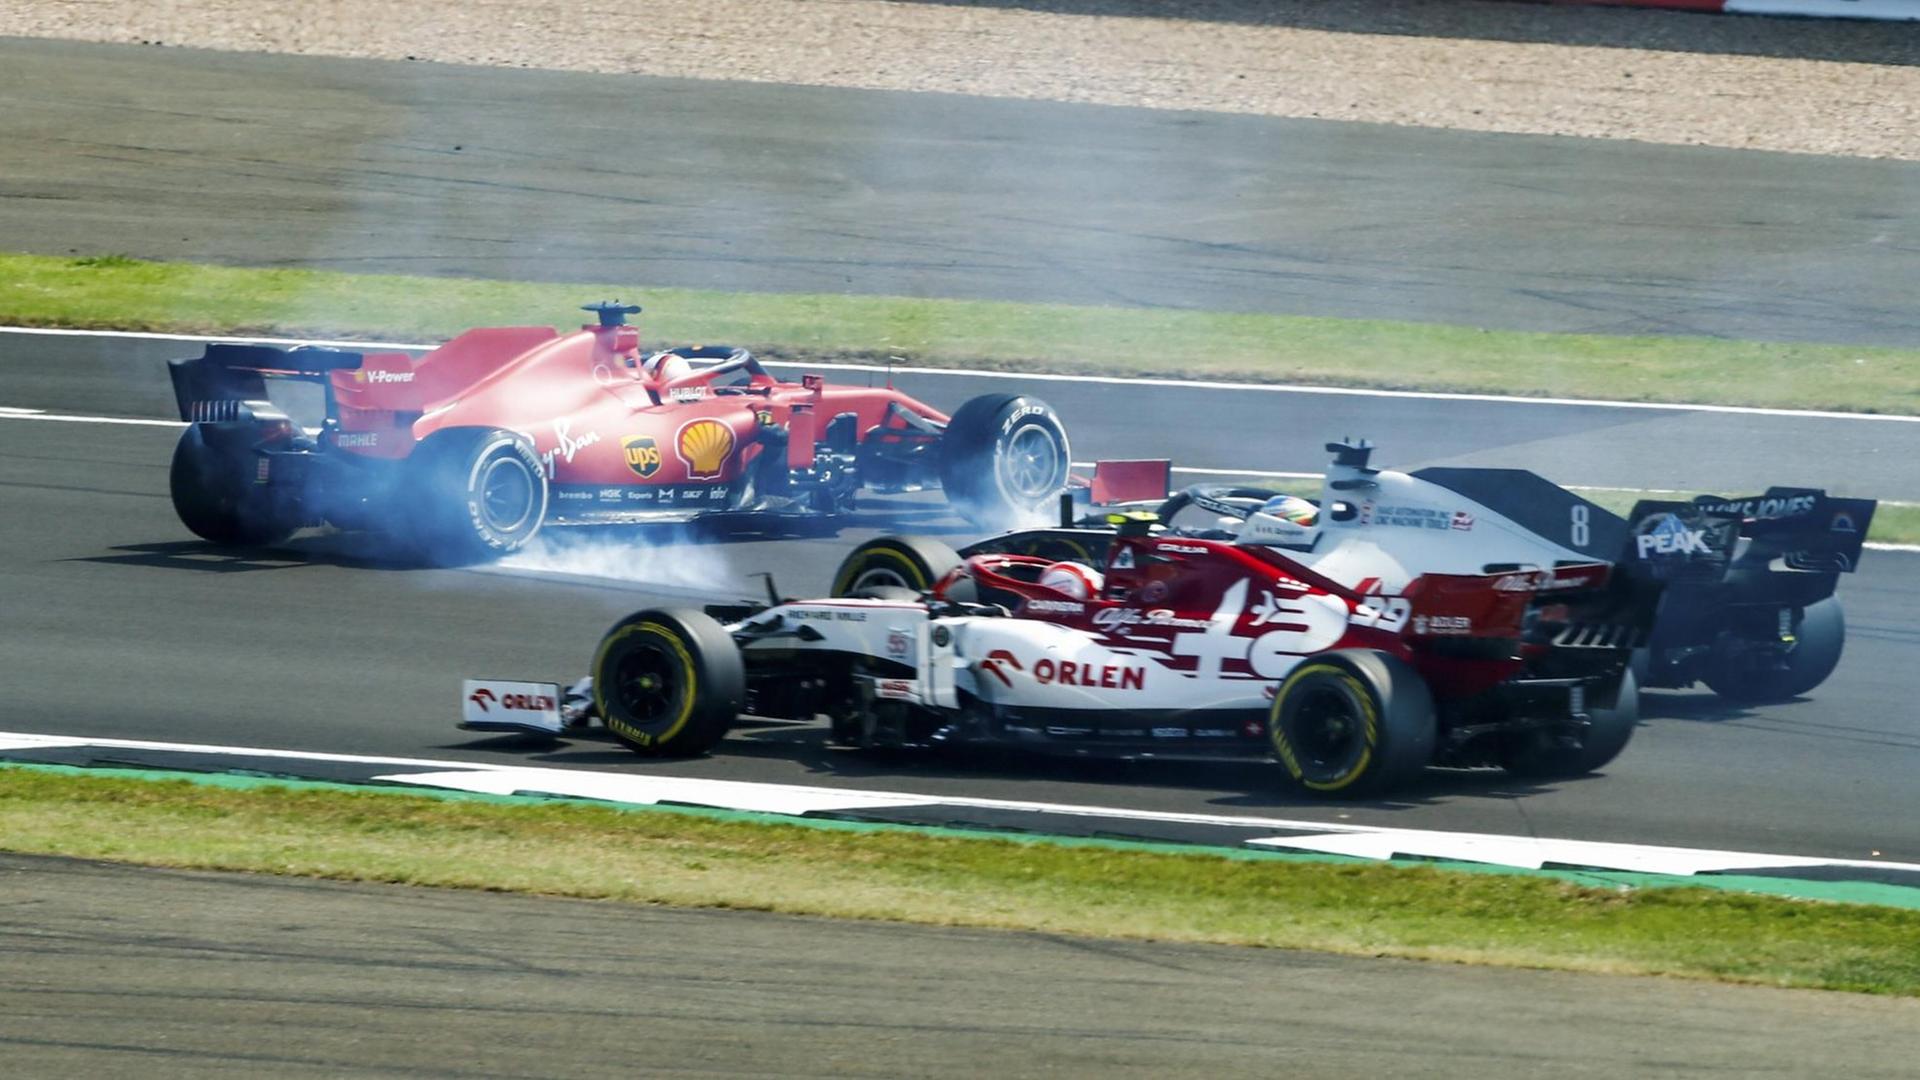 Vettels Auto steht mit qualmenden Reifen quer